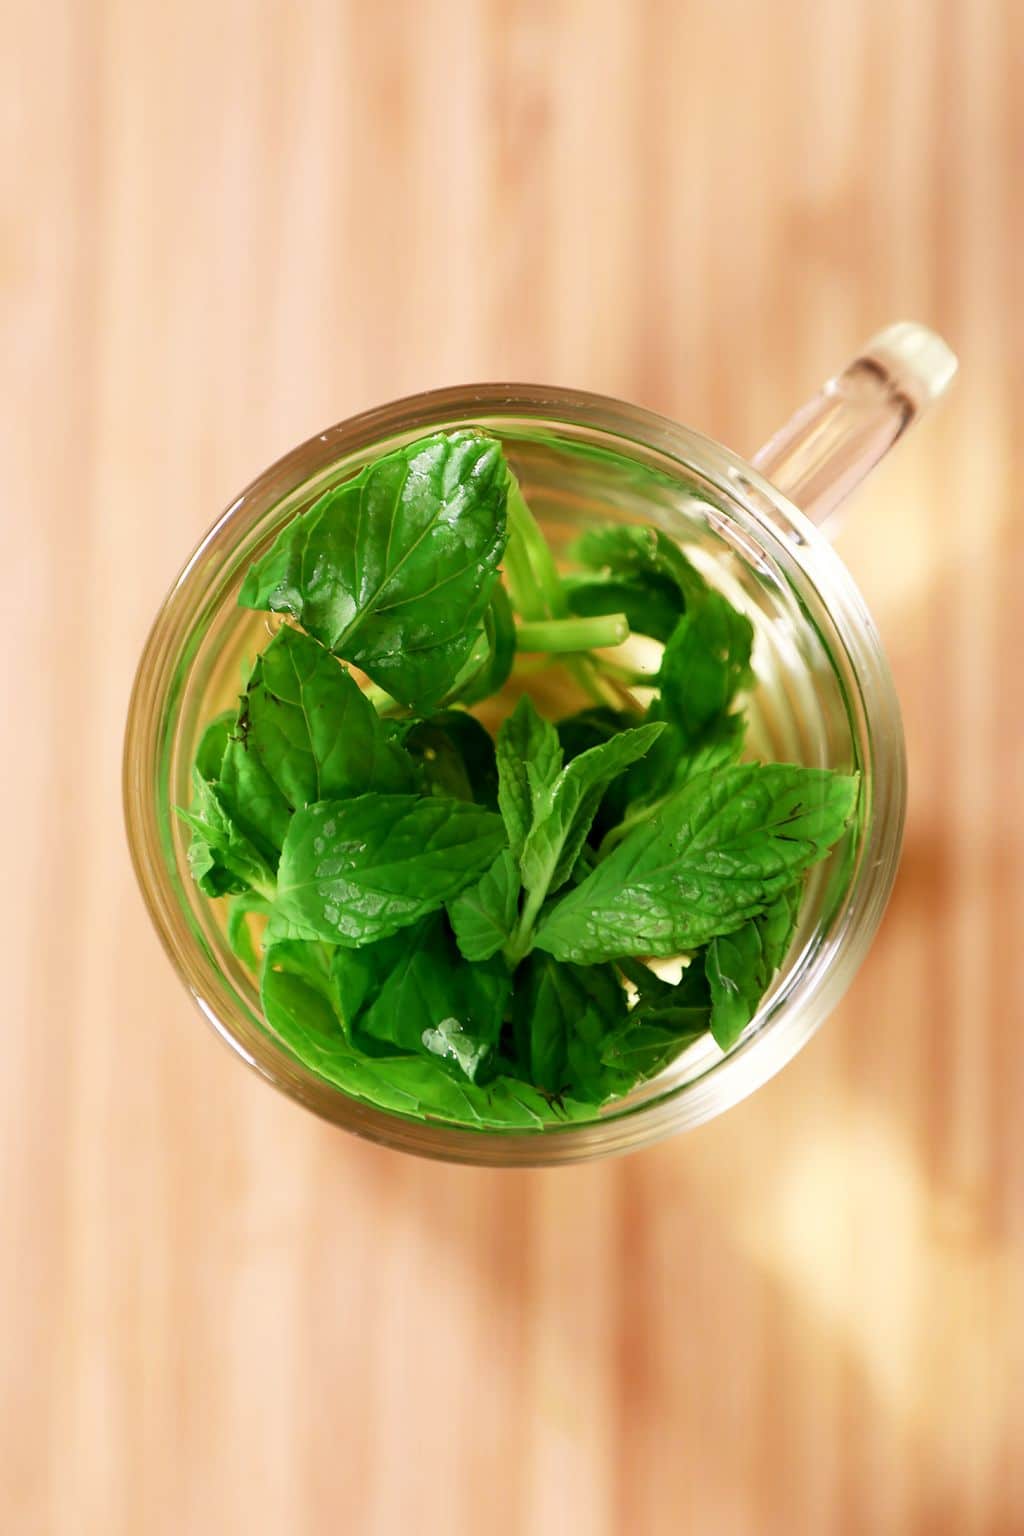 Mint Tea - Healthier Steps